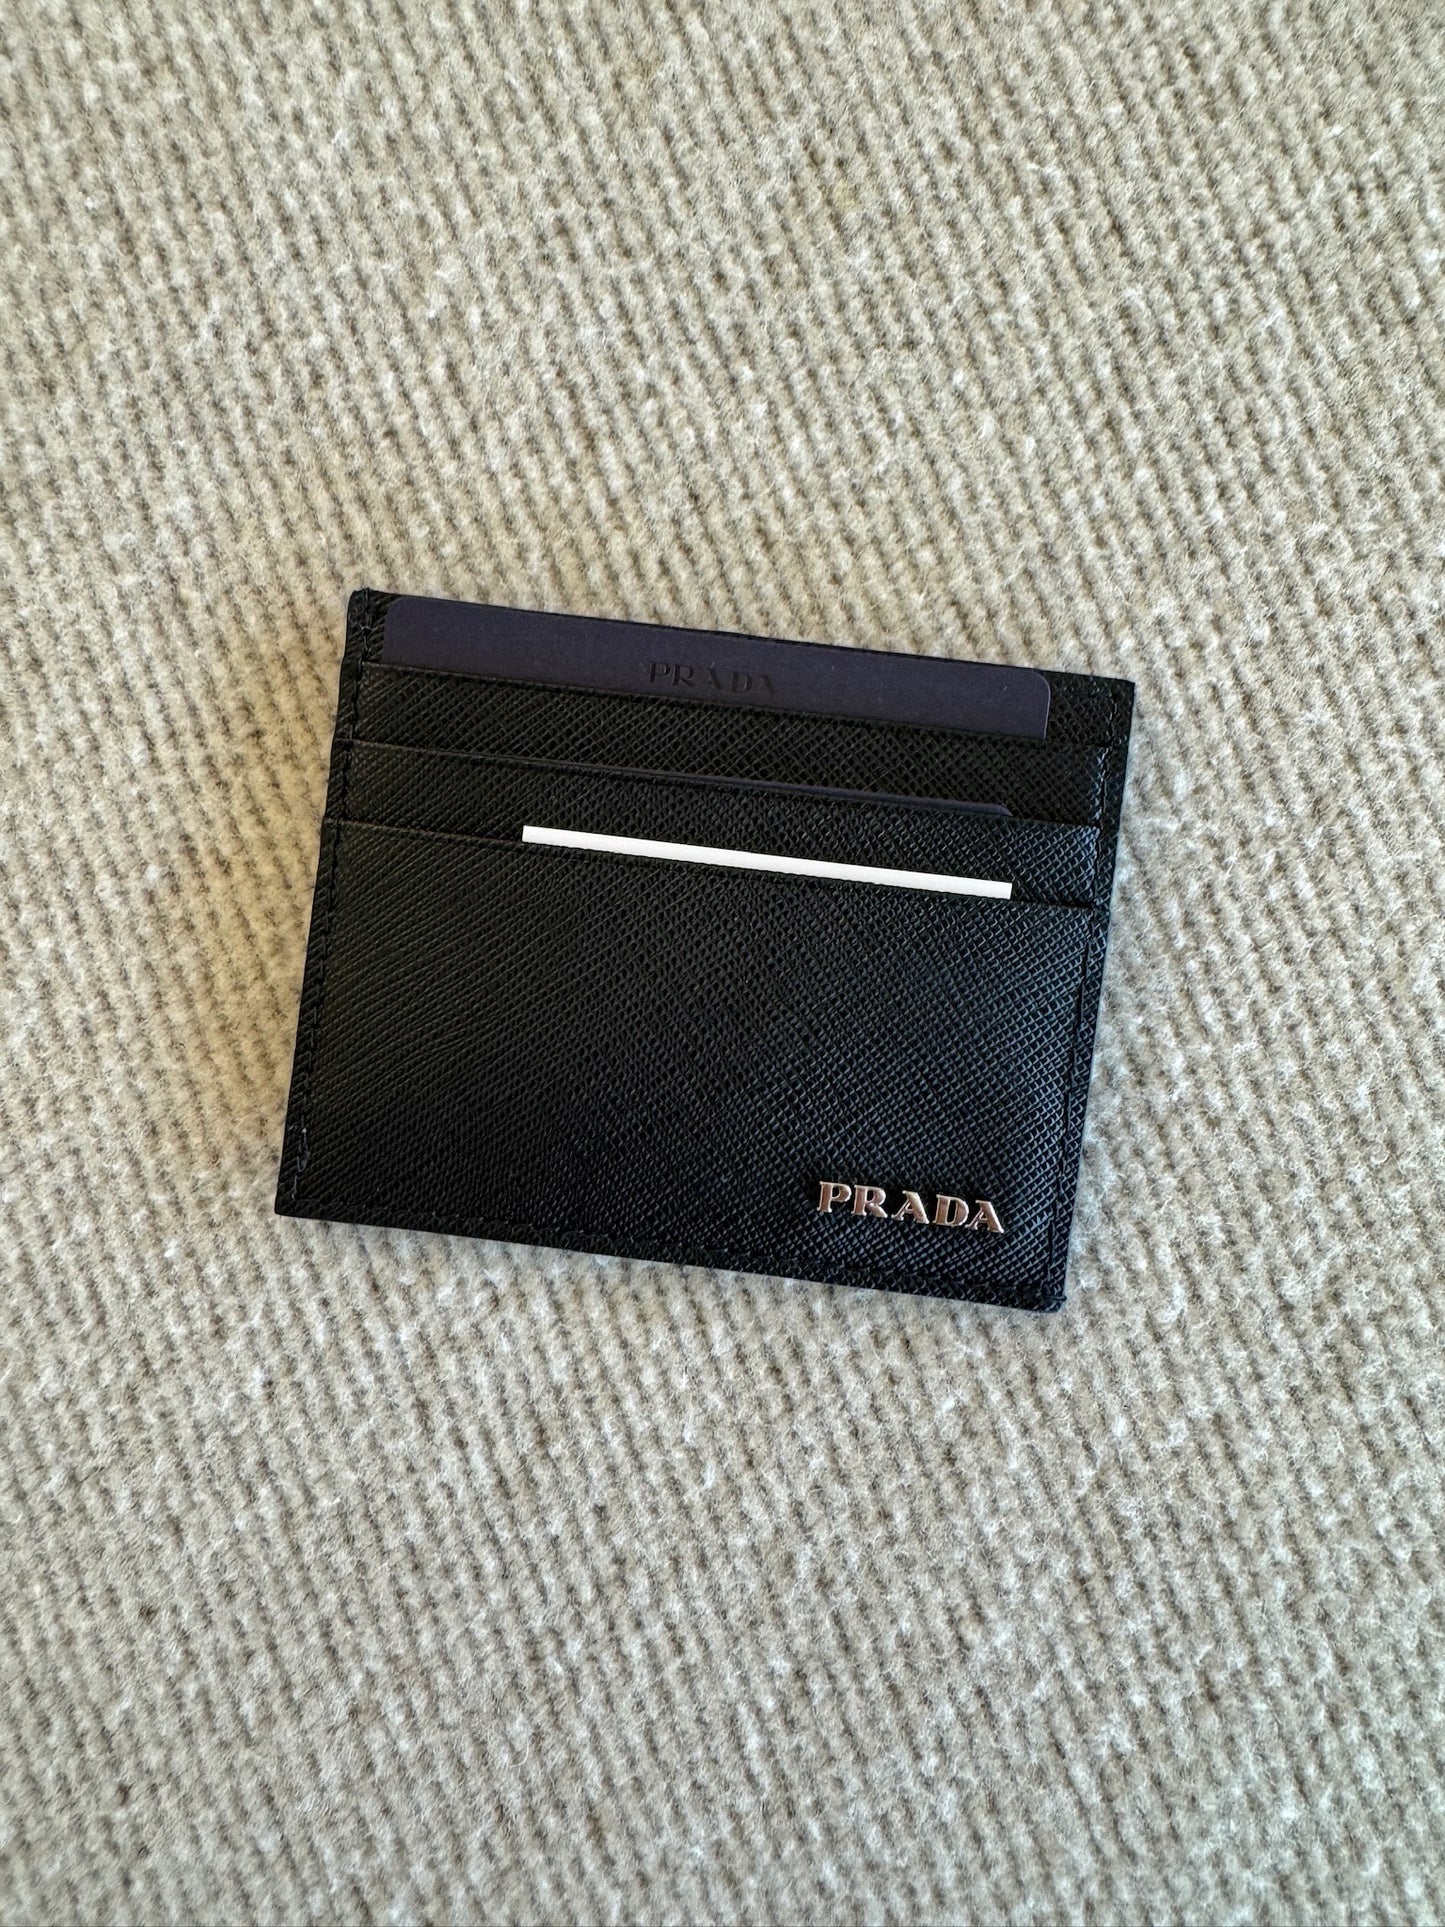 Prada Card Holder